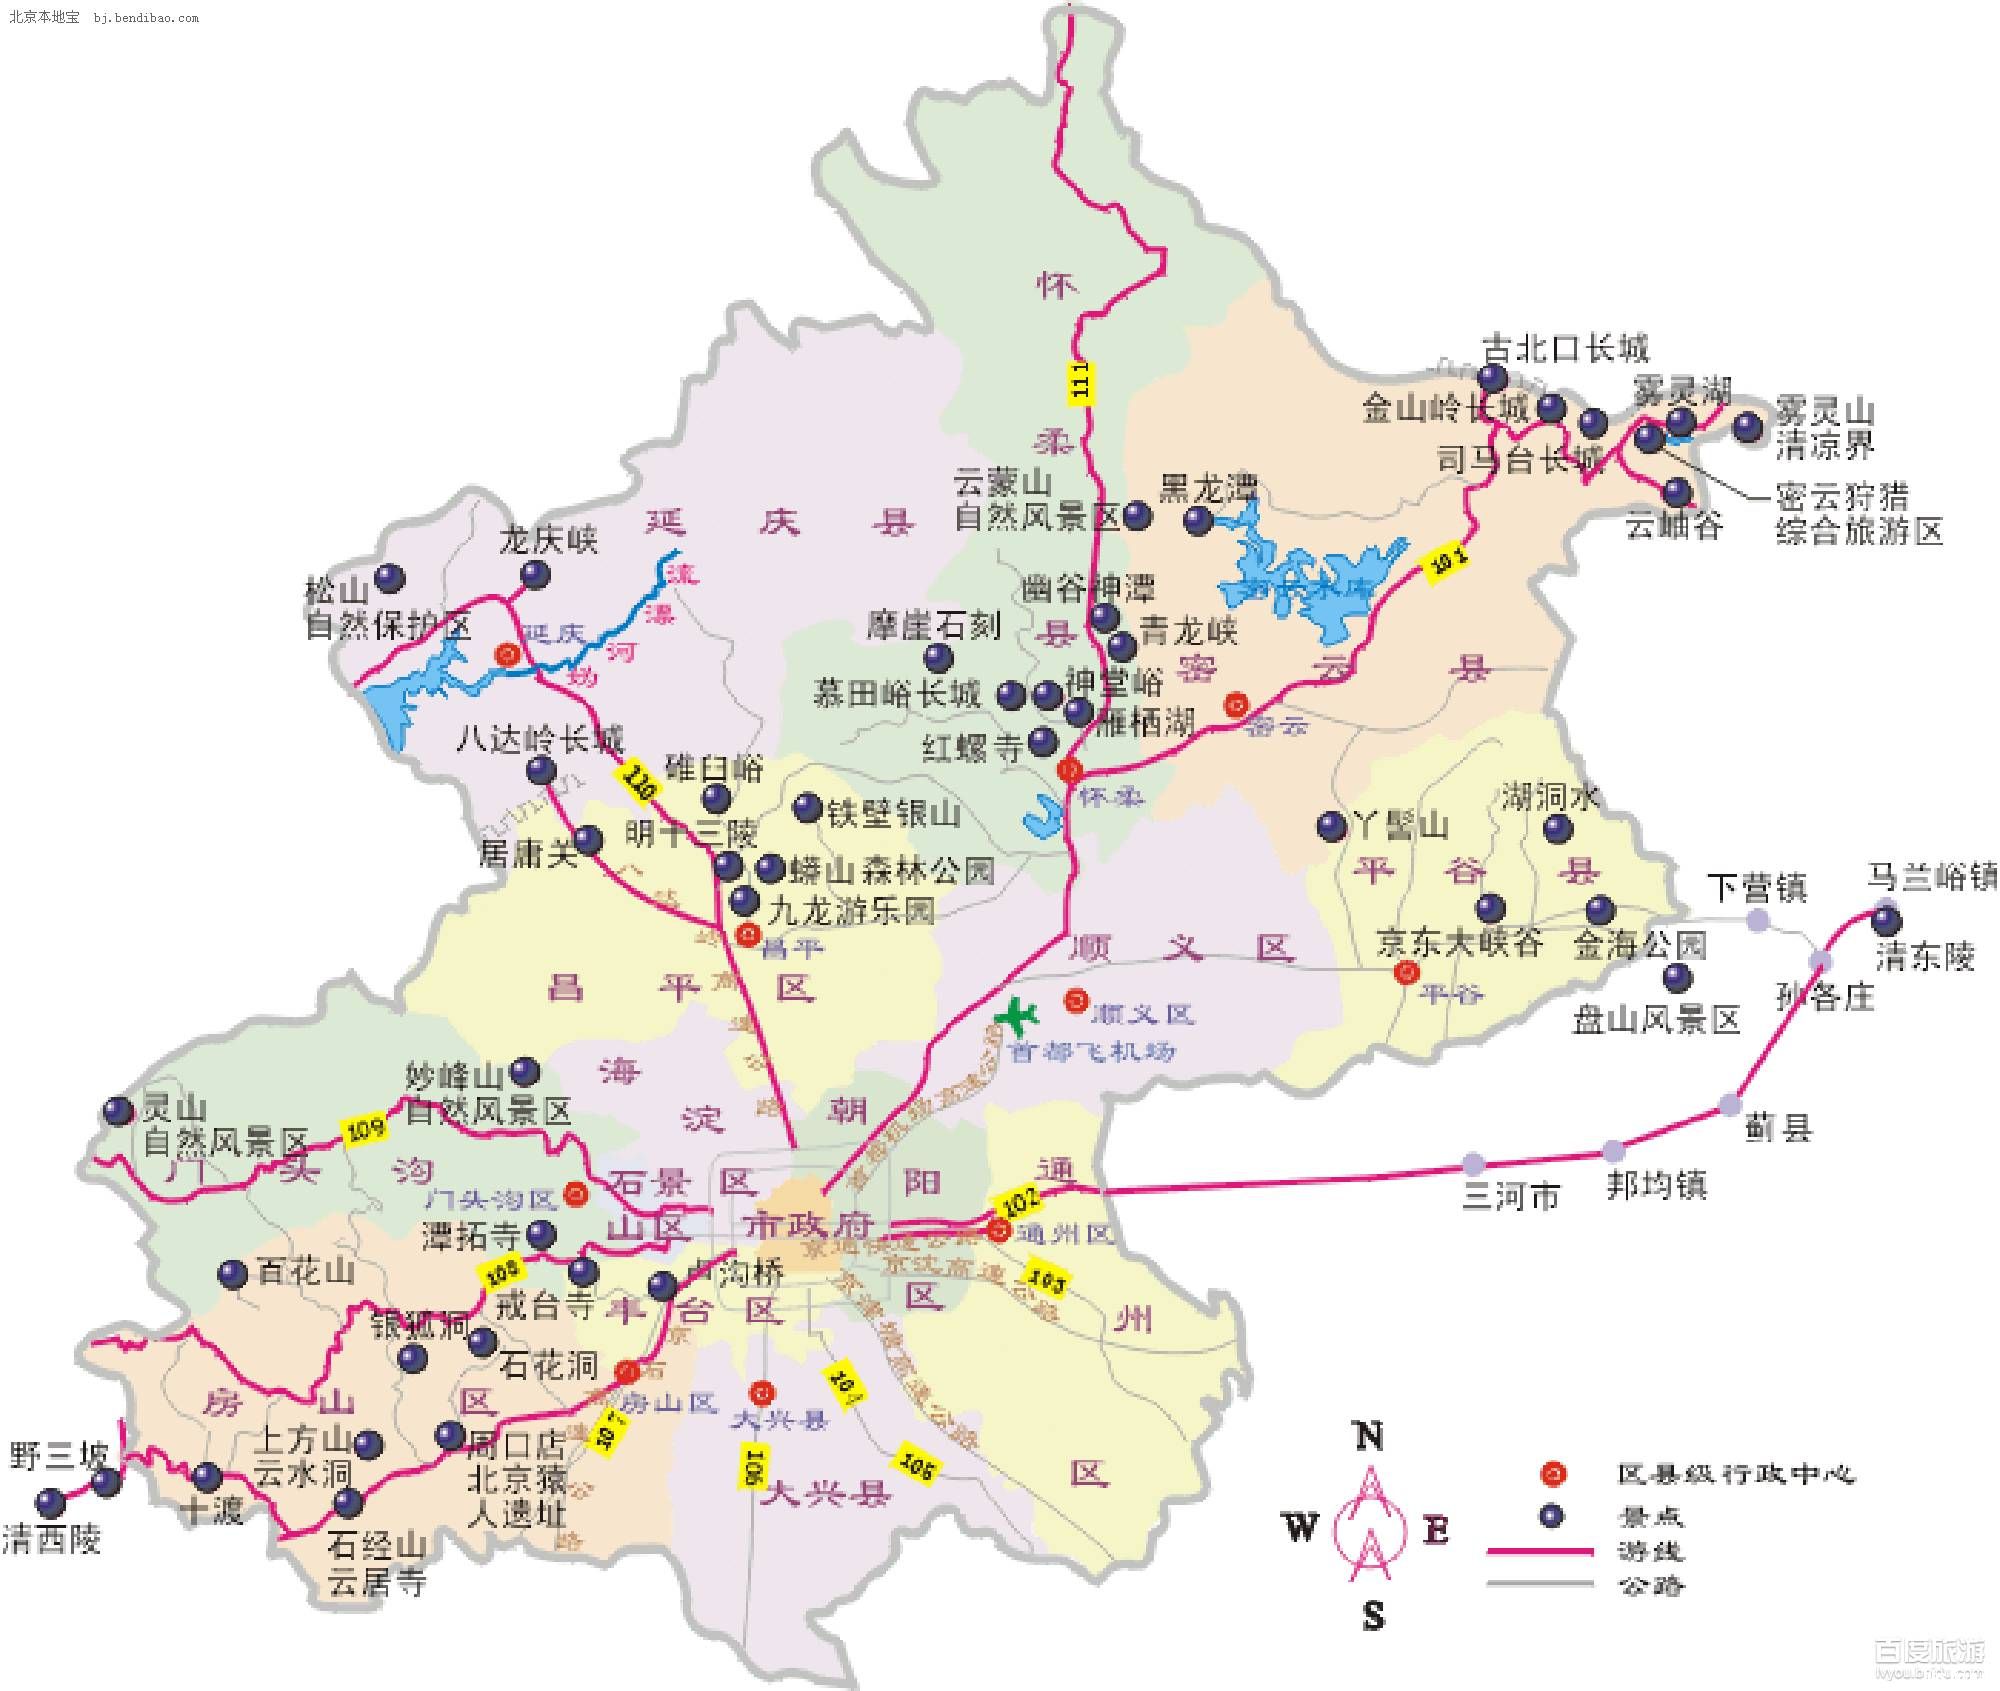 北京郊区旅游地图-燕郊-河北-绿野户外网